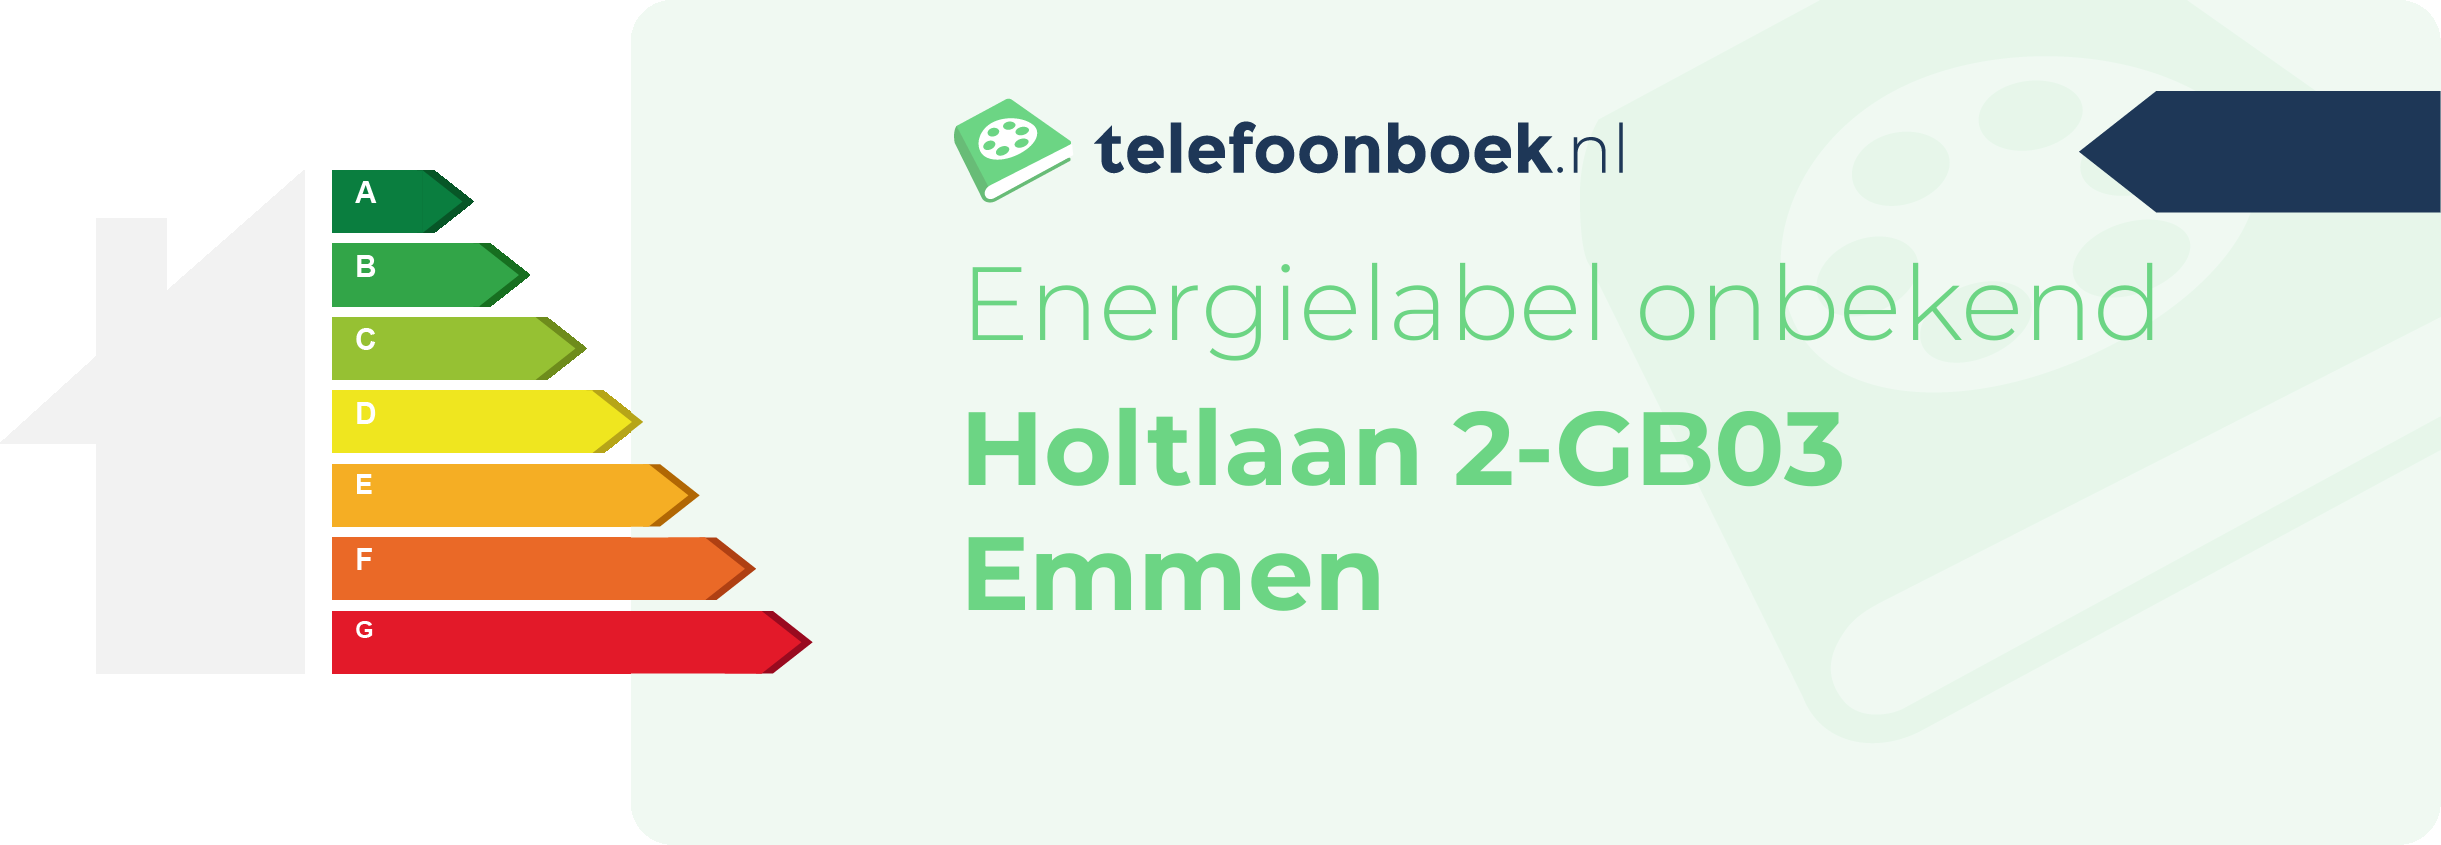 Energielabel Holtlaan 2-GB03 Emmen